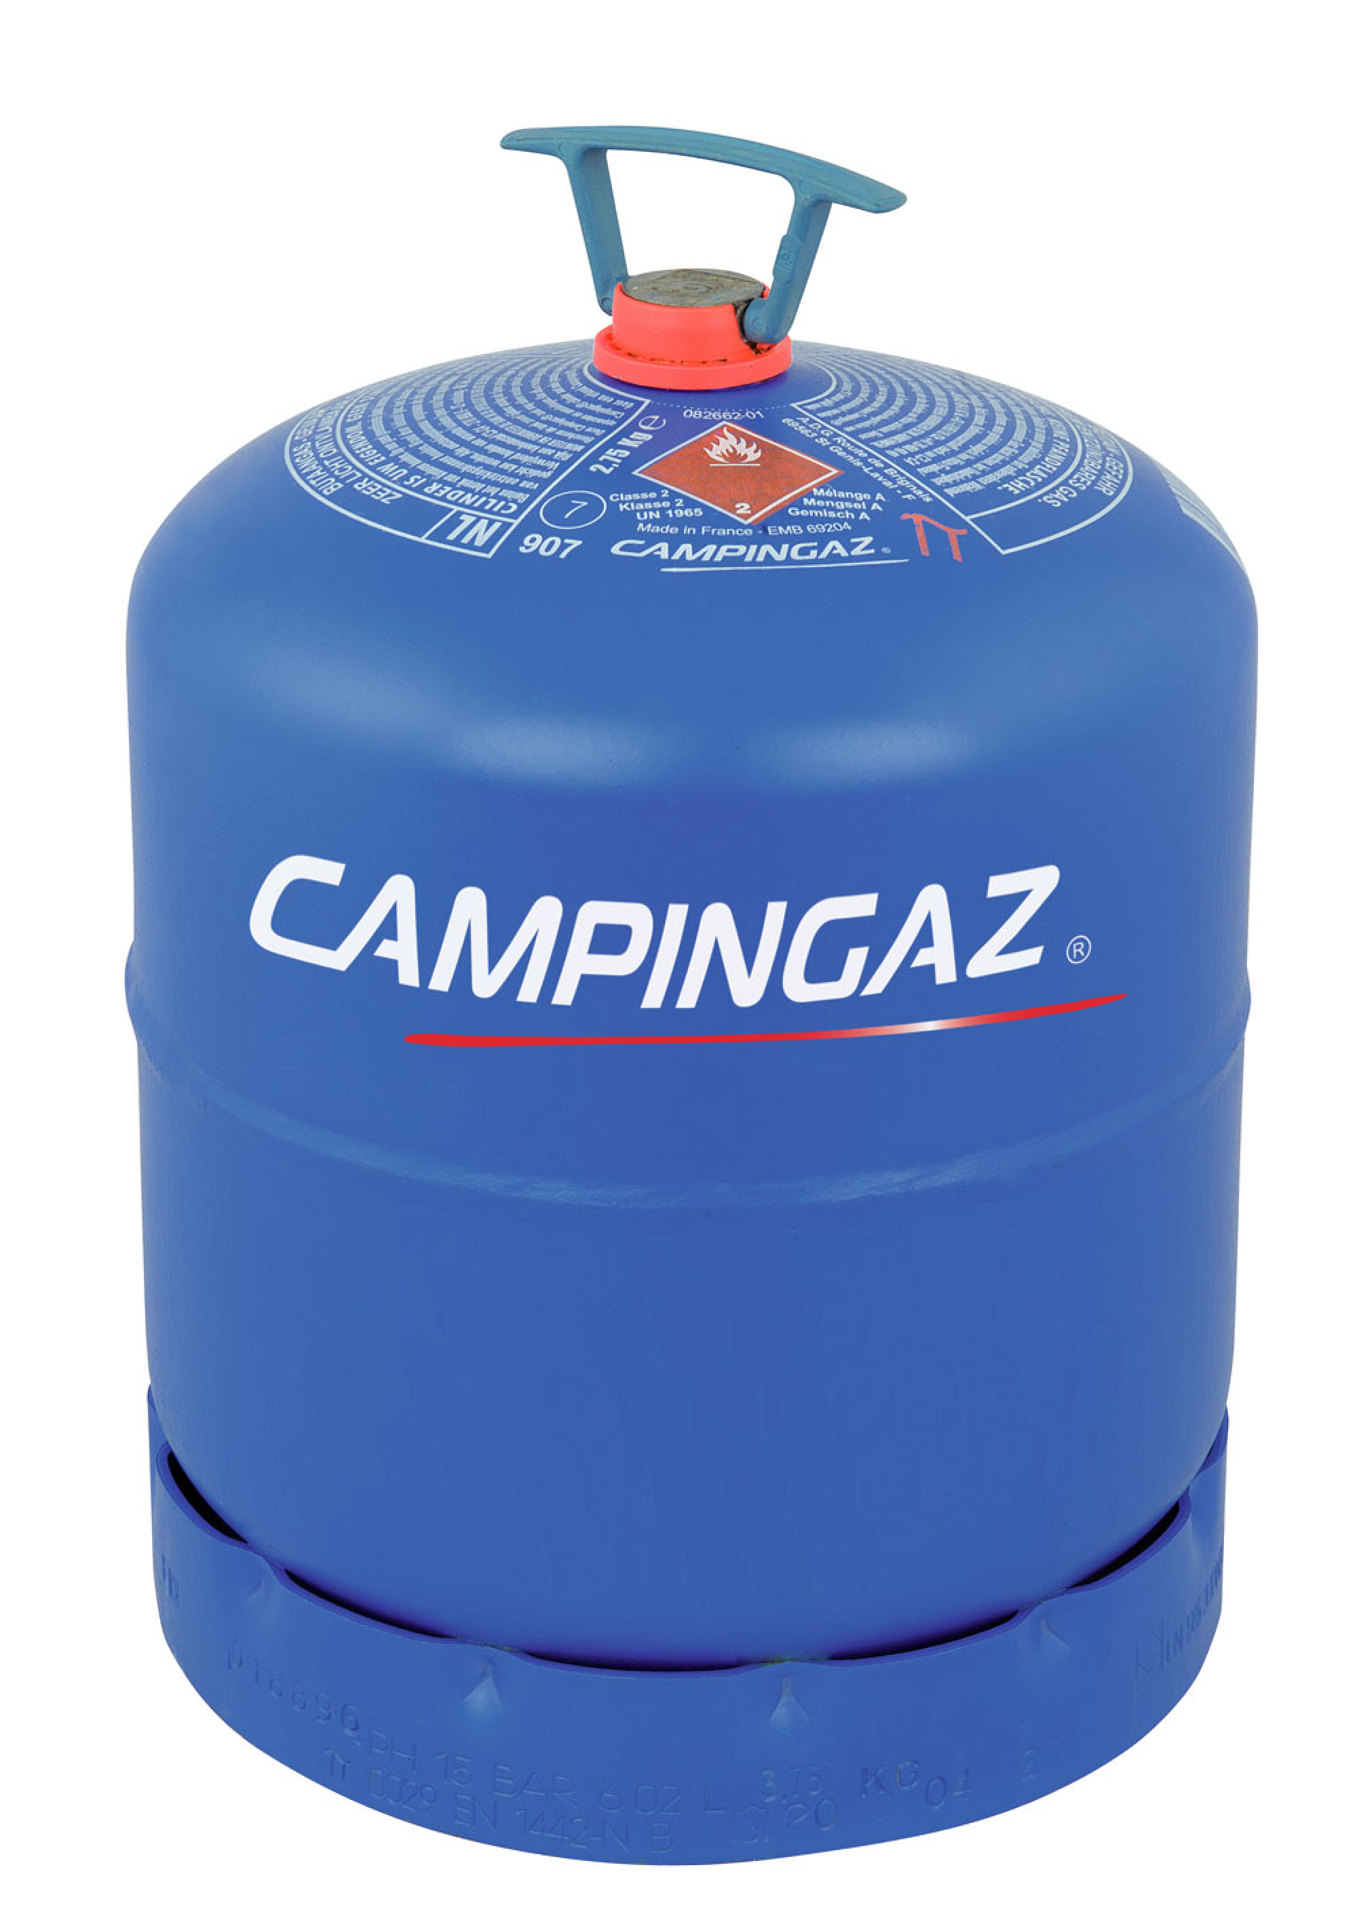 Campingaz lahev R 907